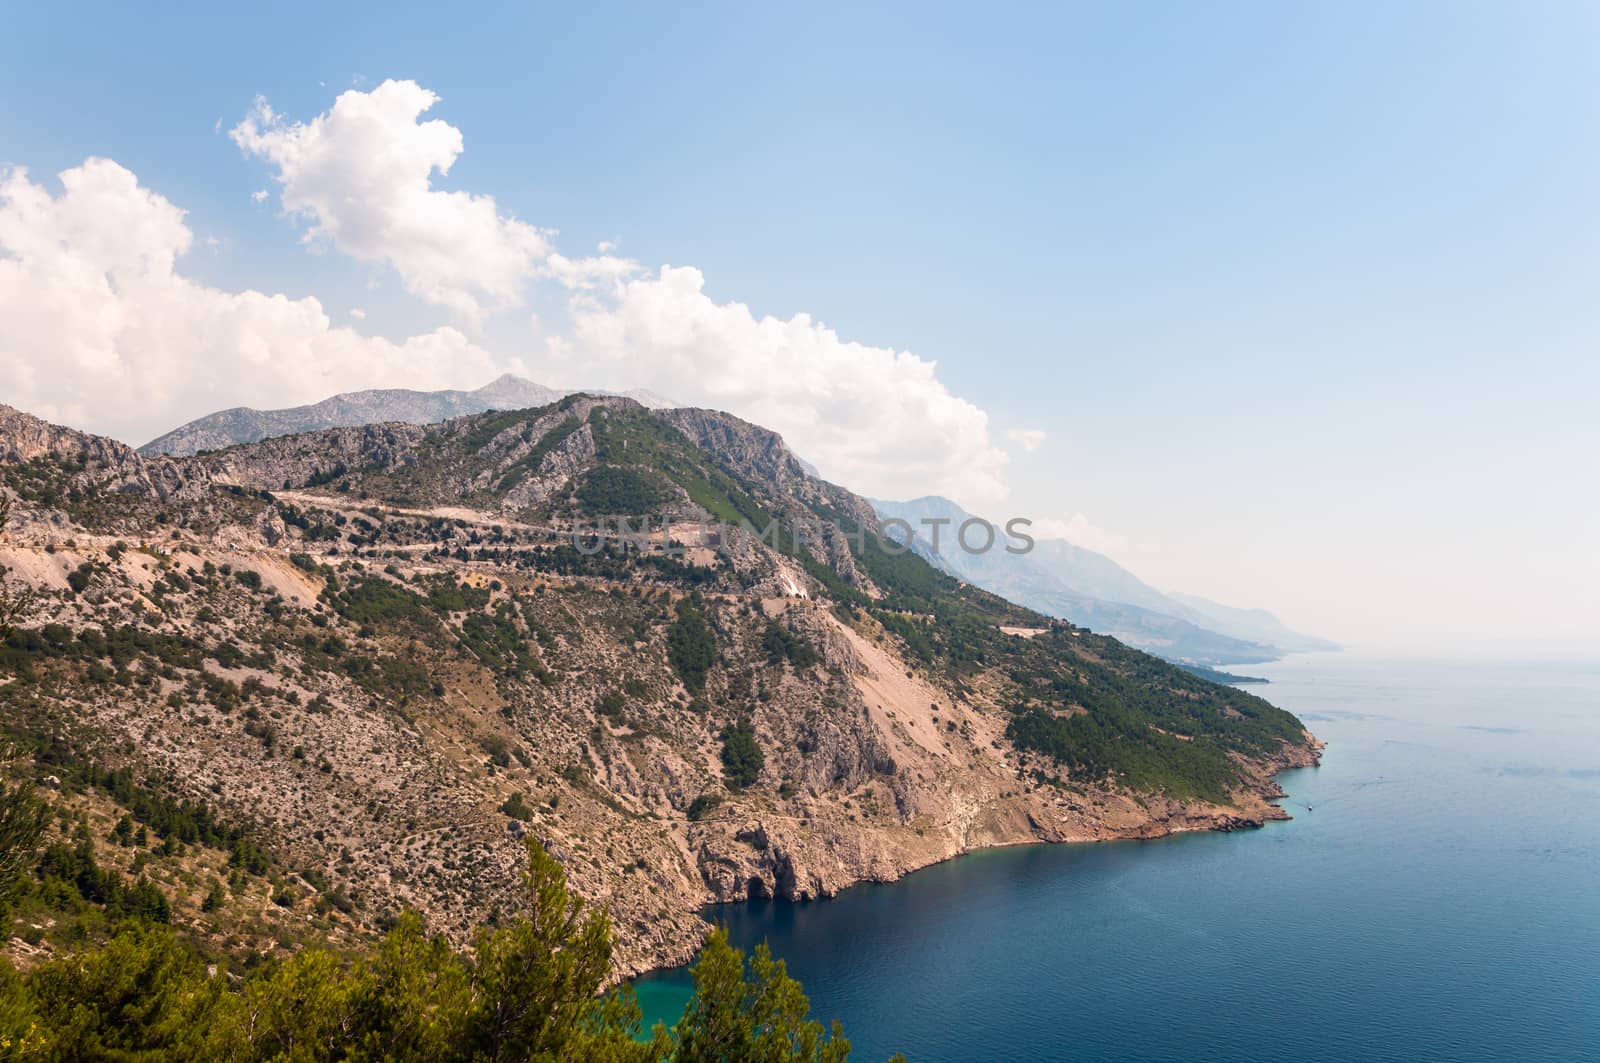 Southern coast of Croatia, mountains and Adriatic sea.